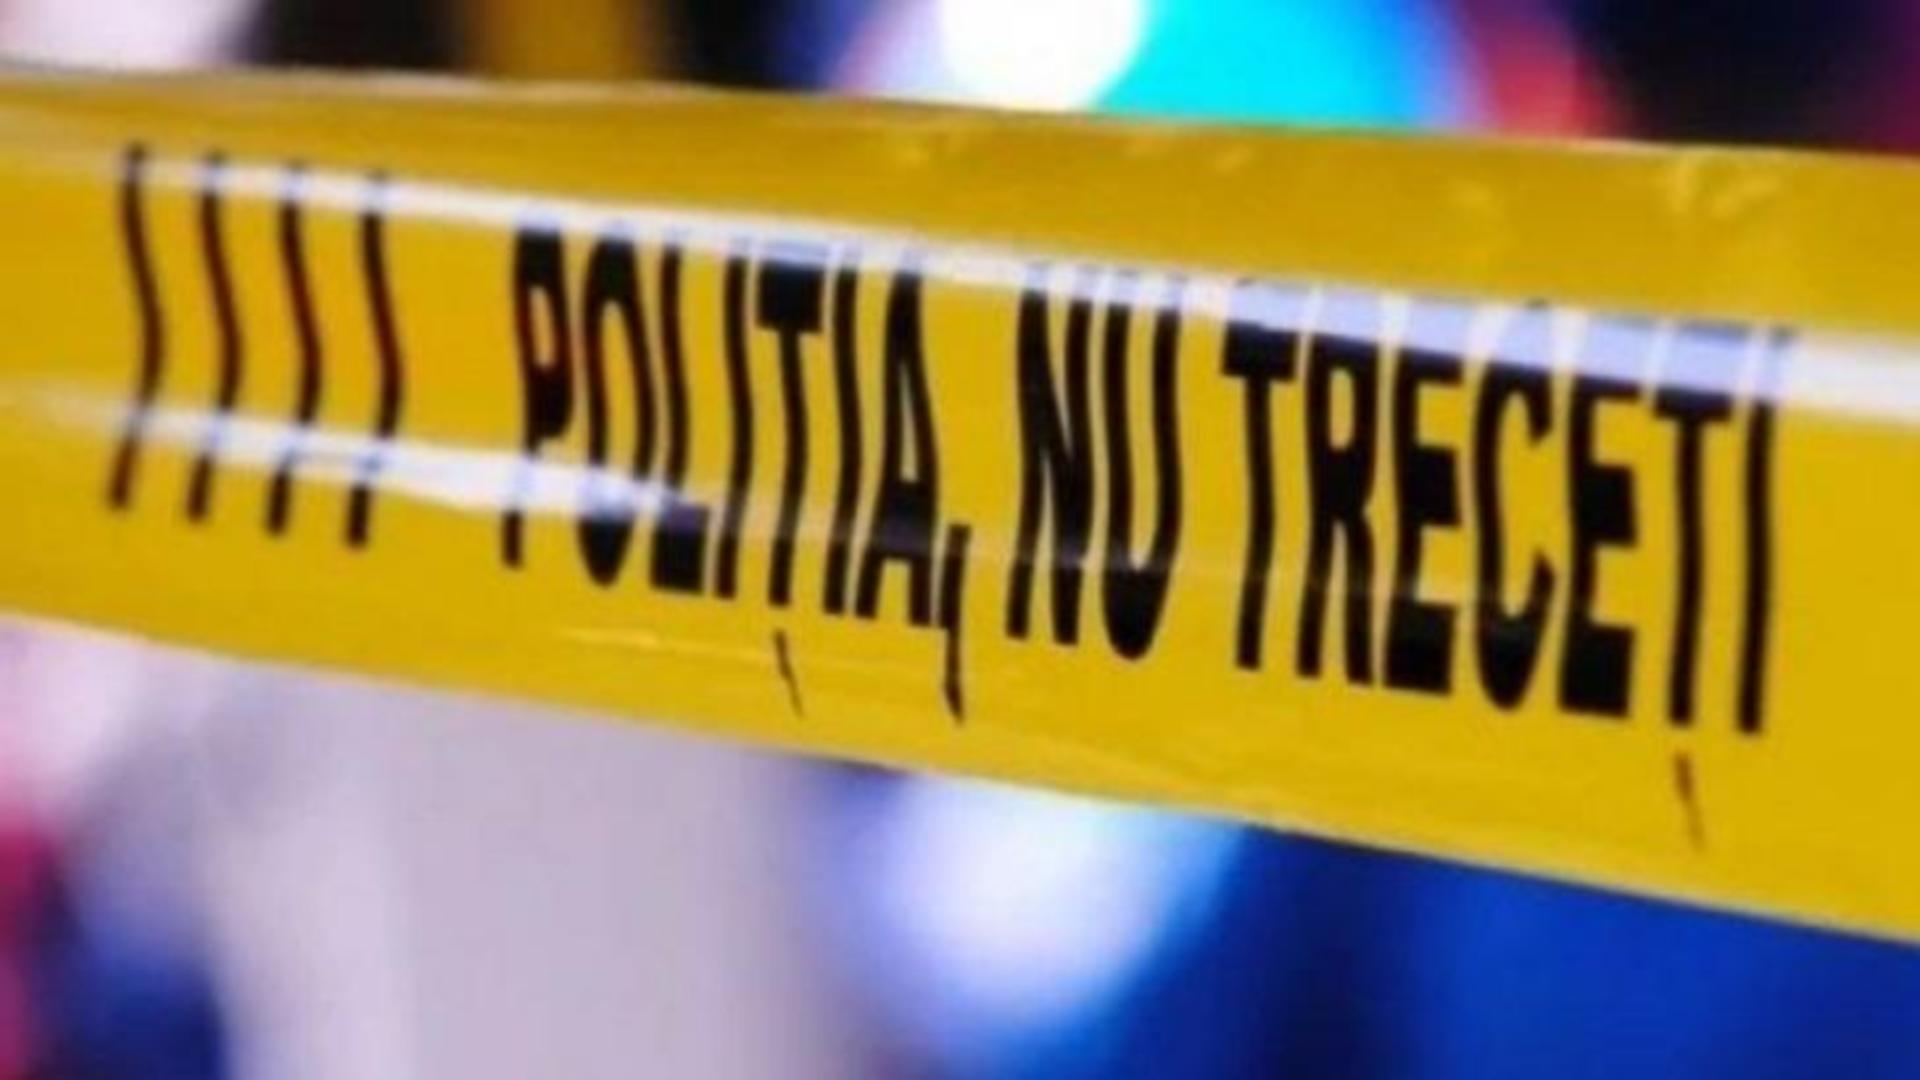 Tragedie în Olt: un polițist din Slatina, găsit spânzurat în locuința sa